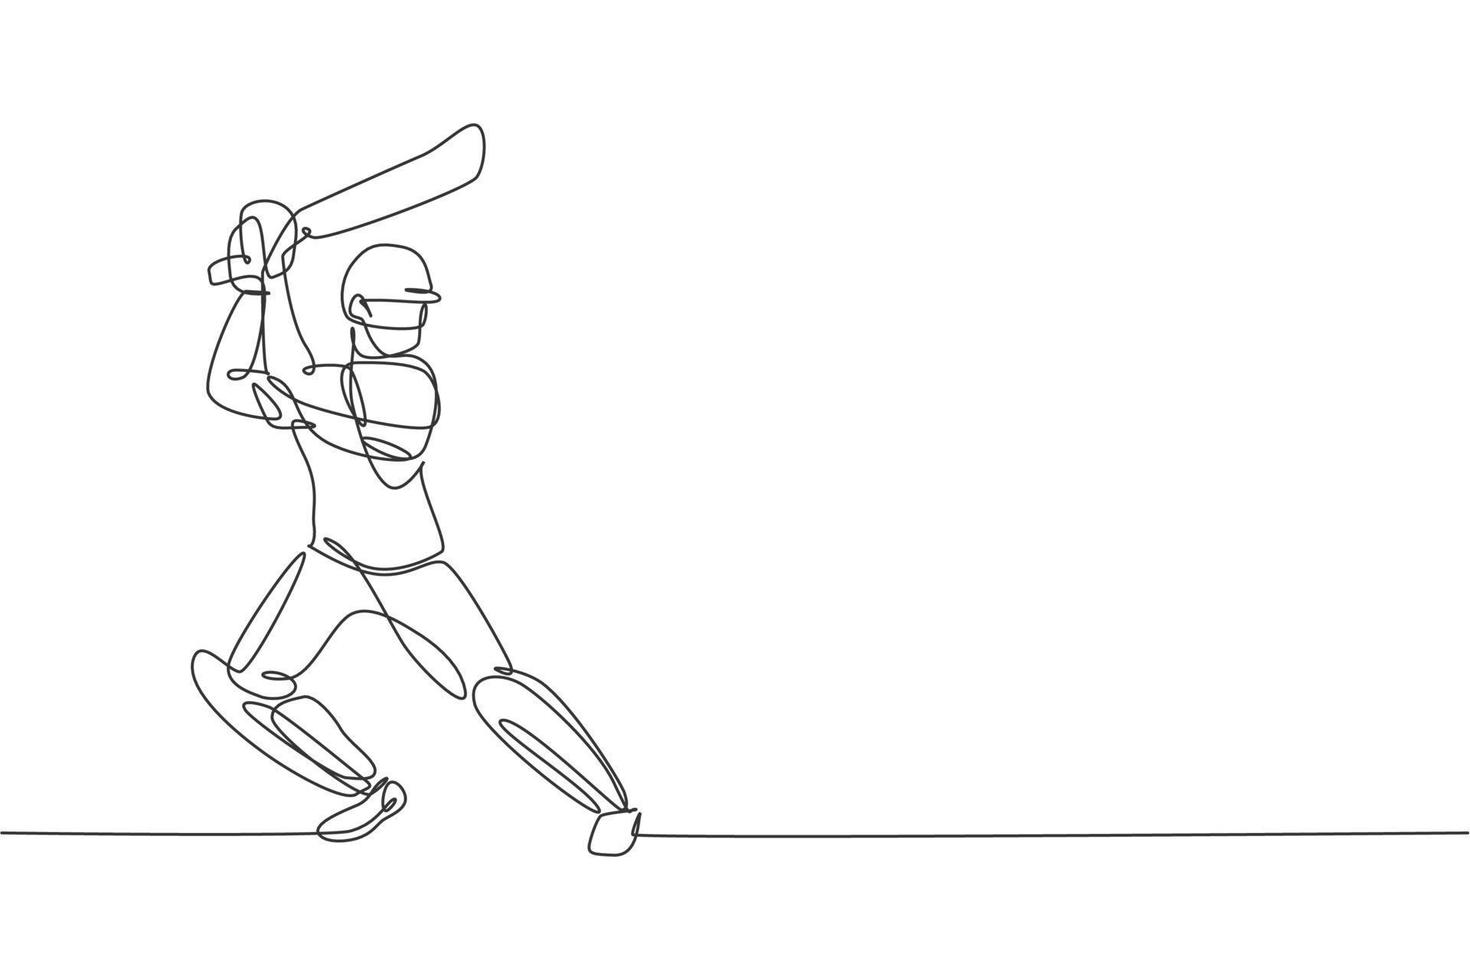 disegno a linea continua singola del giovane giocatore di cricket in piedi e pratica per oscillare l'illustrazione vettoriale del pipistrello. concetto di esercizio sportivo. design alla moda di una linea per i media di promozione del cricket